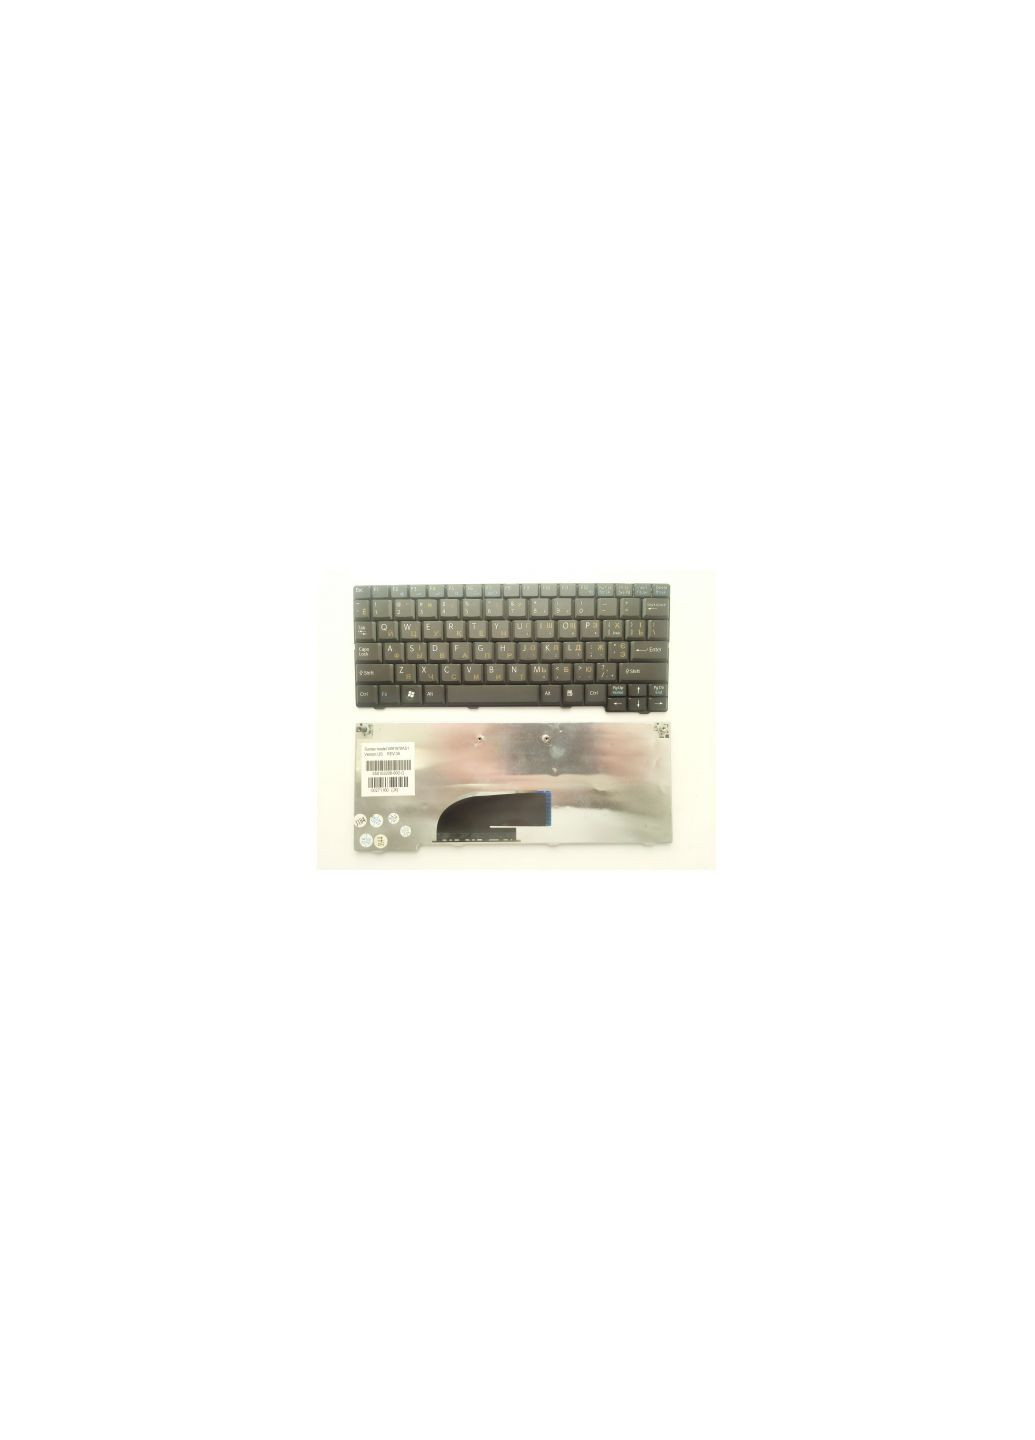 Клавиатура ноутбука VPCM12/M13 Series черная UA (A43094) Sony vpc-m12/m13 series черная ua (276706354)